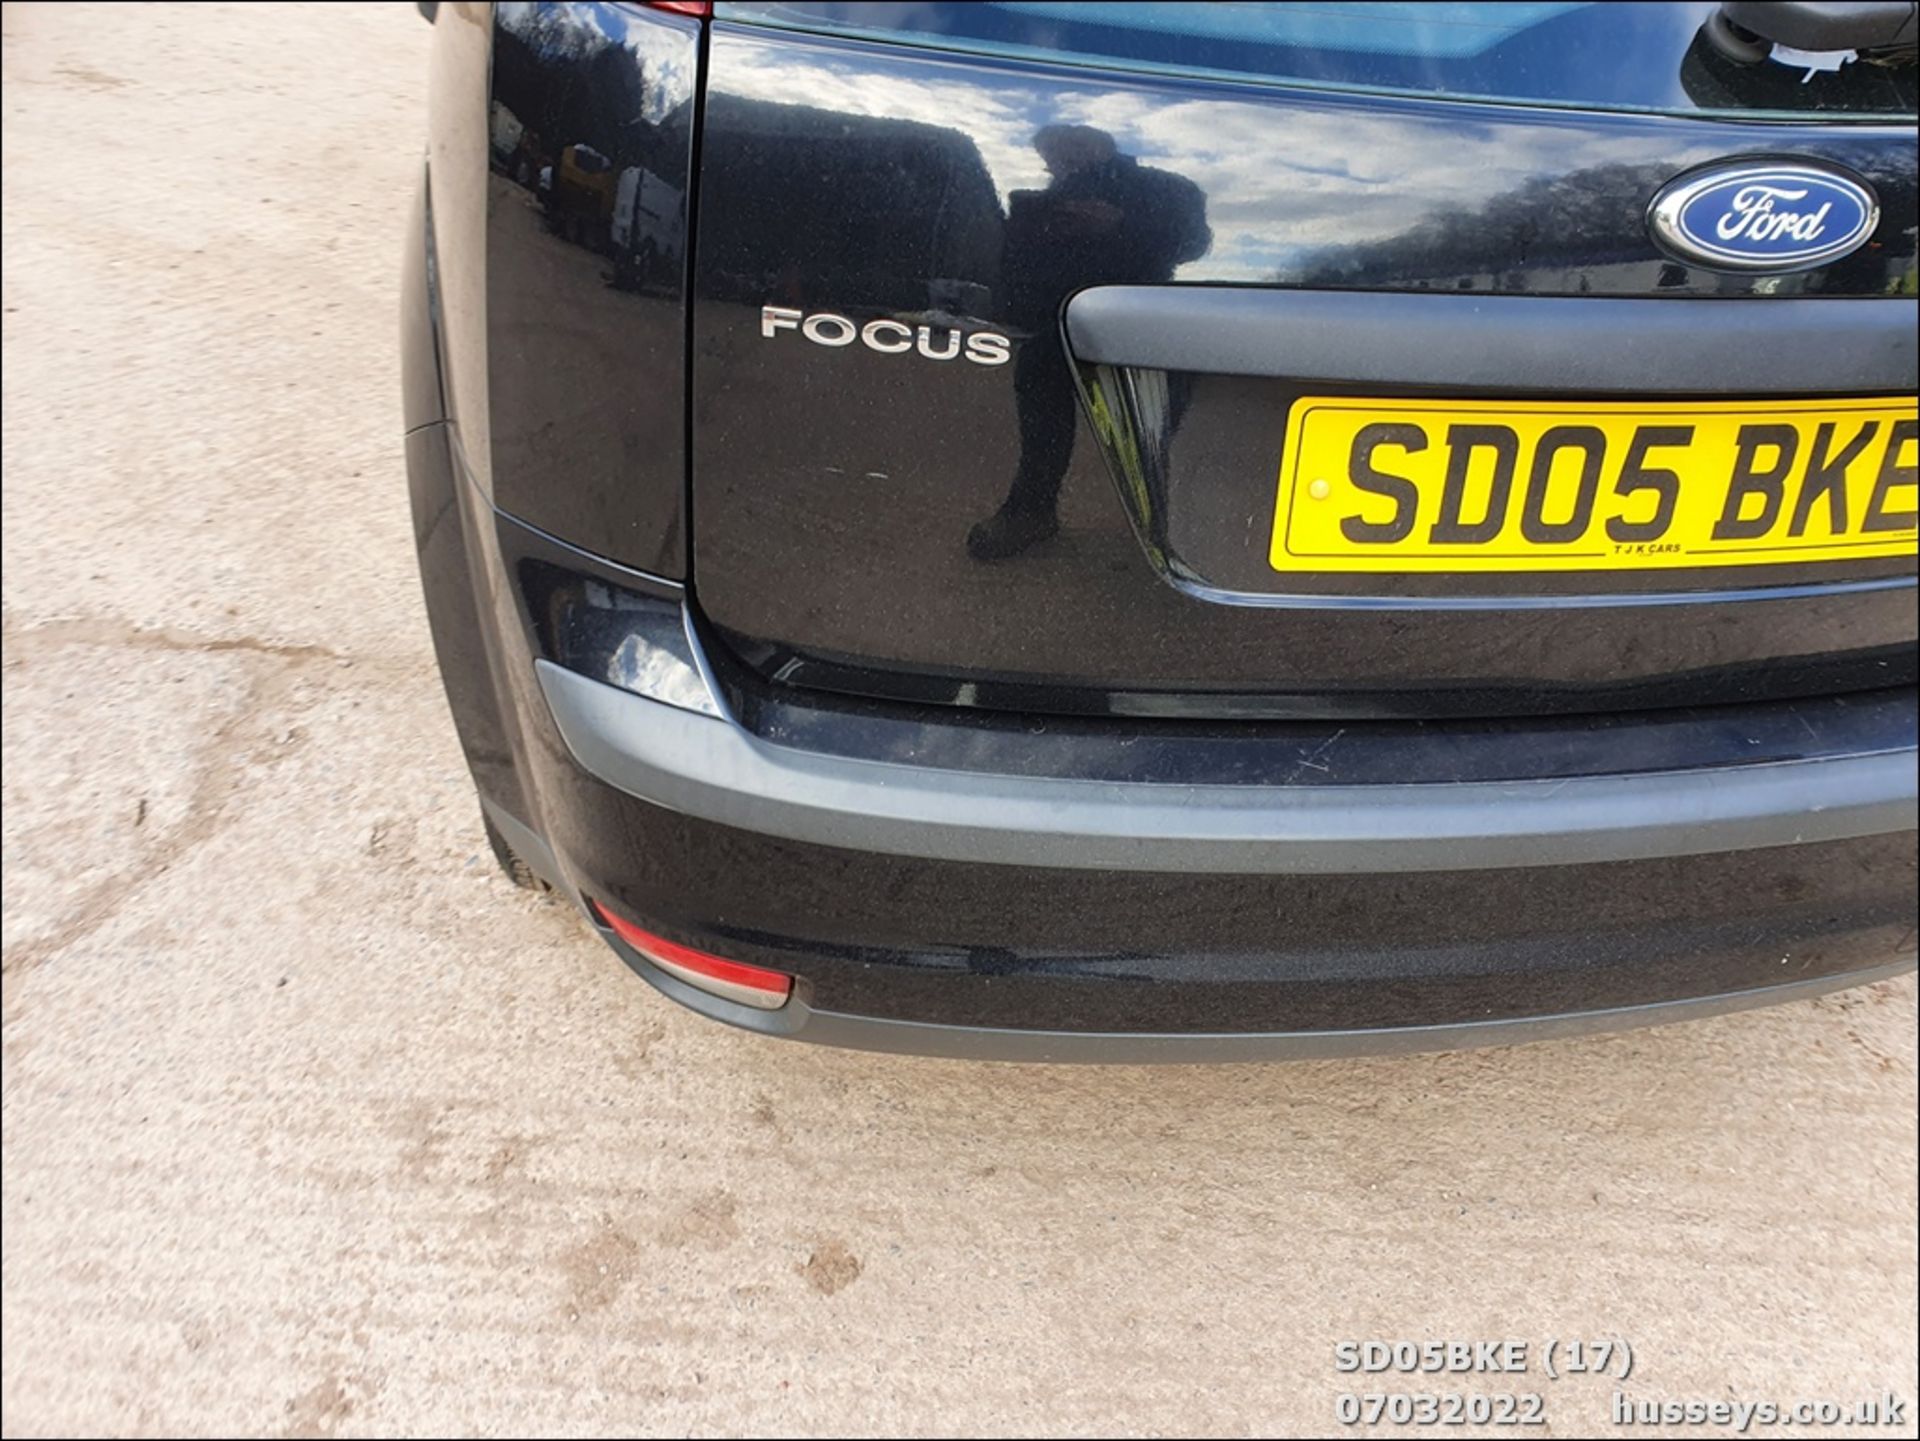 05/05 FORD FOCUS STUDIO - 1388cc 5dr Hatchback (Black, 105k) - Image 17 of 31